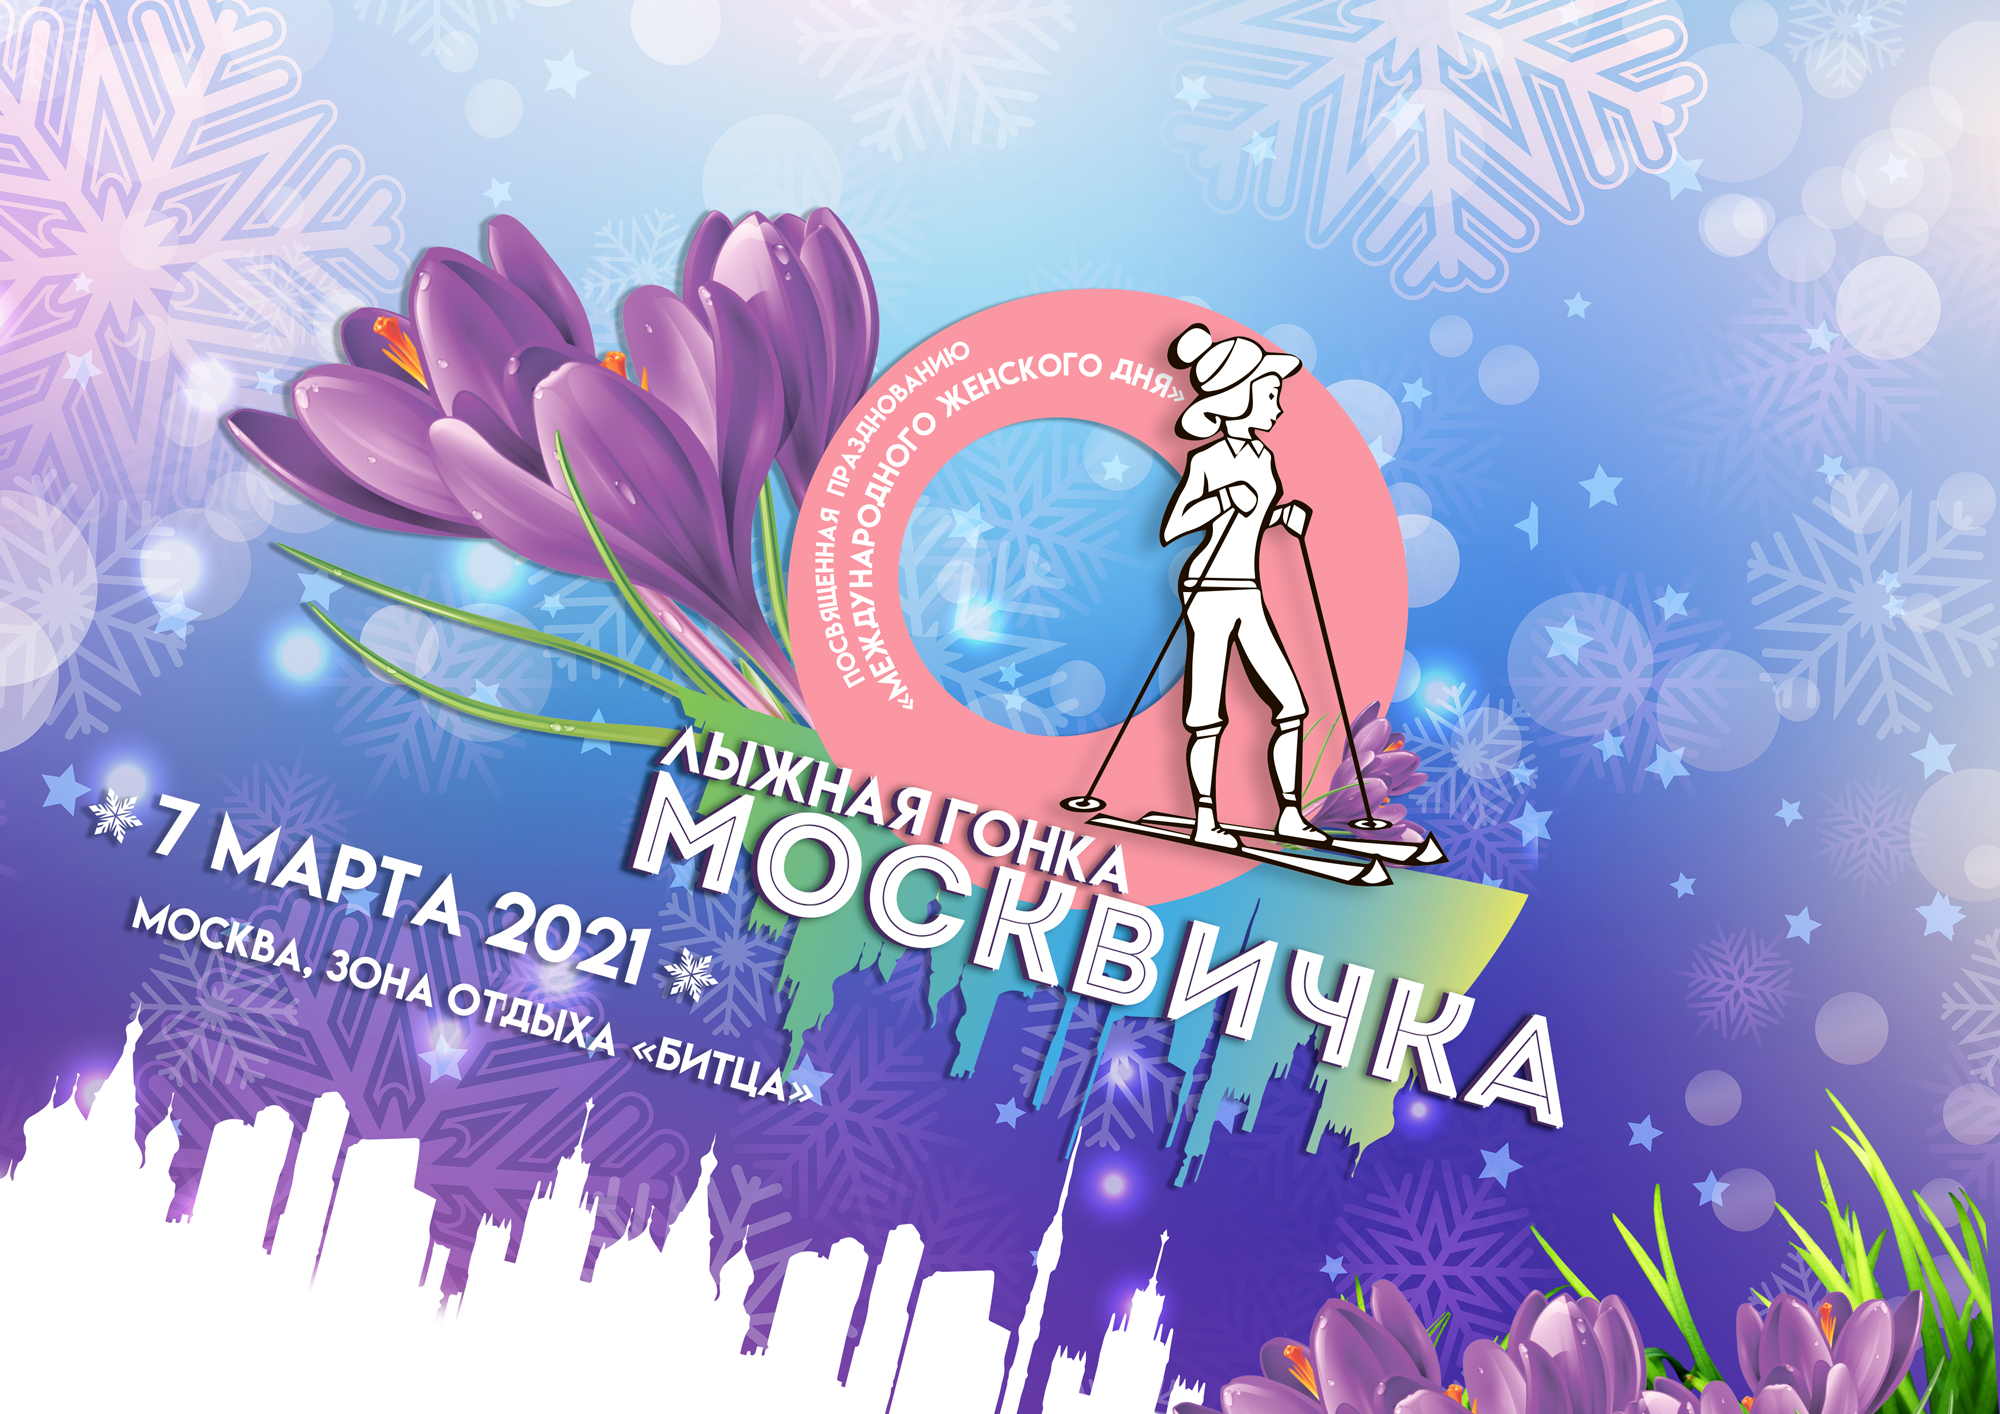 Праздничная лыжная гонка «Москвичка 2021» пройдет 7 марта на территории зоны отдыха «Битца»